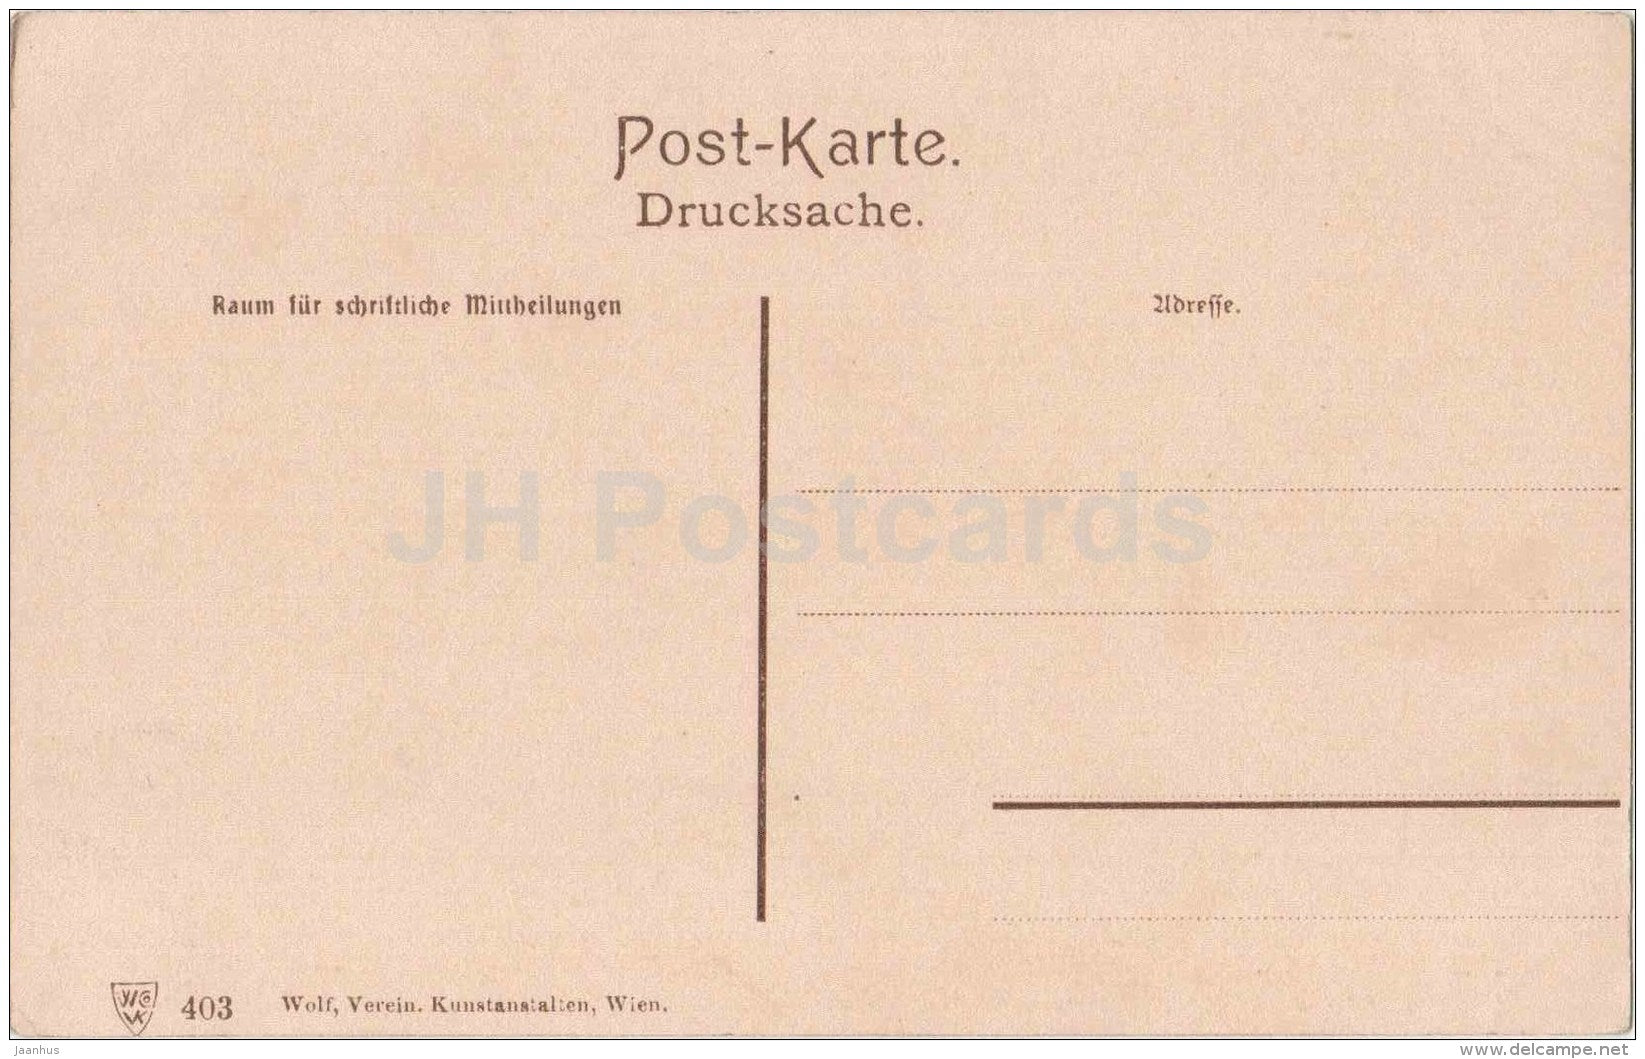 Mozartplatz - Mozartbrunnen - Wien - Vienna - Austria - 403 - old postcard - unused - JH Postcards